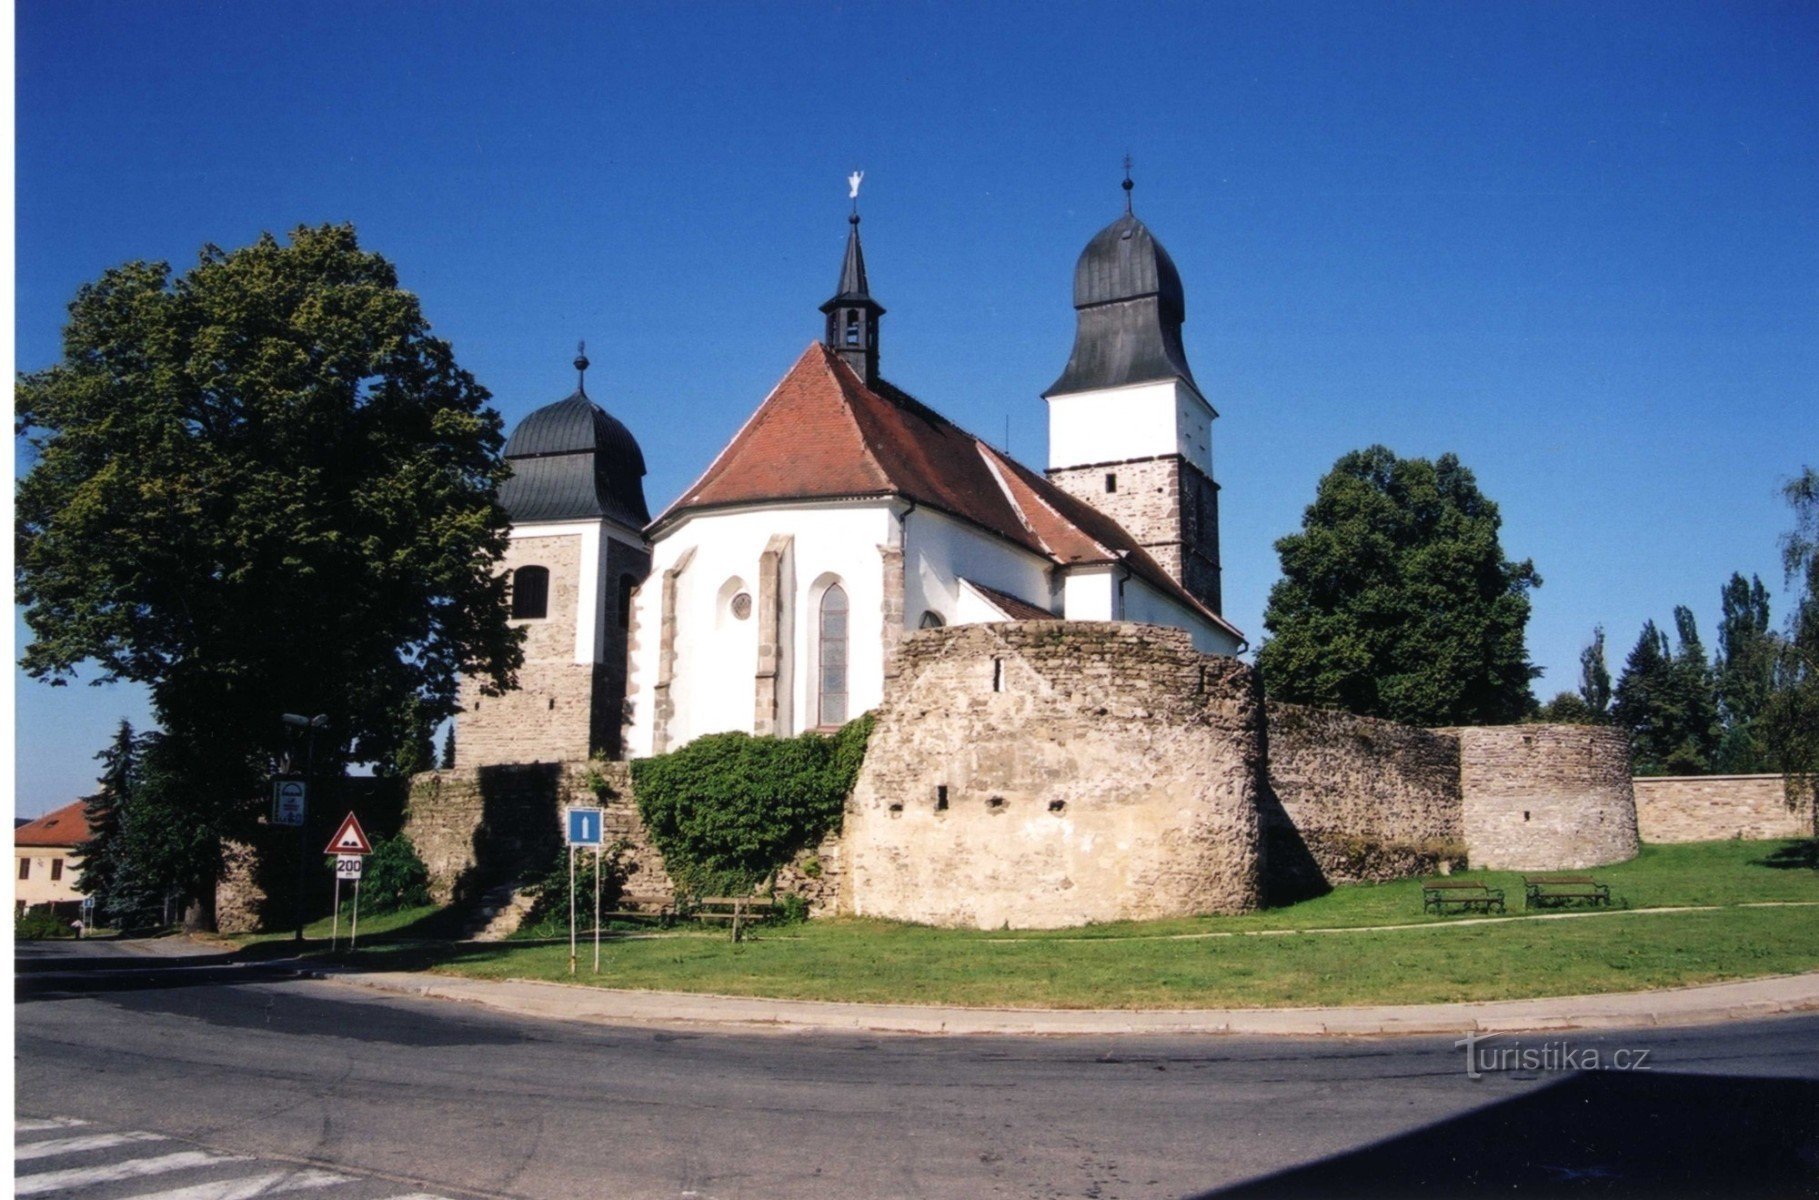 Velká Bíteš - nhà thờ kiên cố